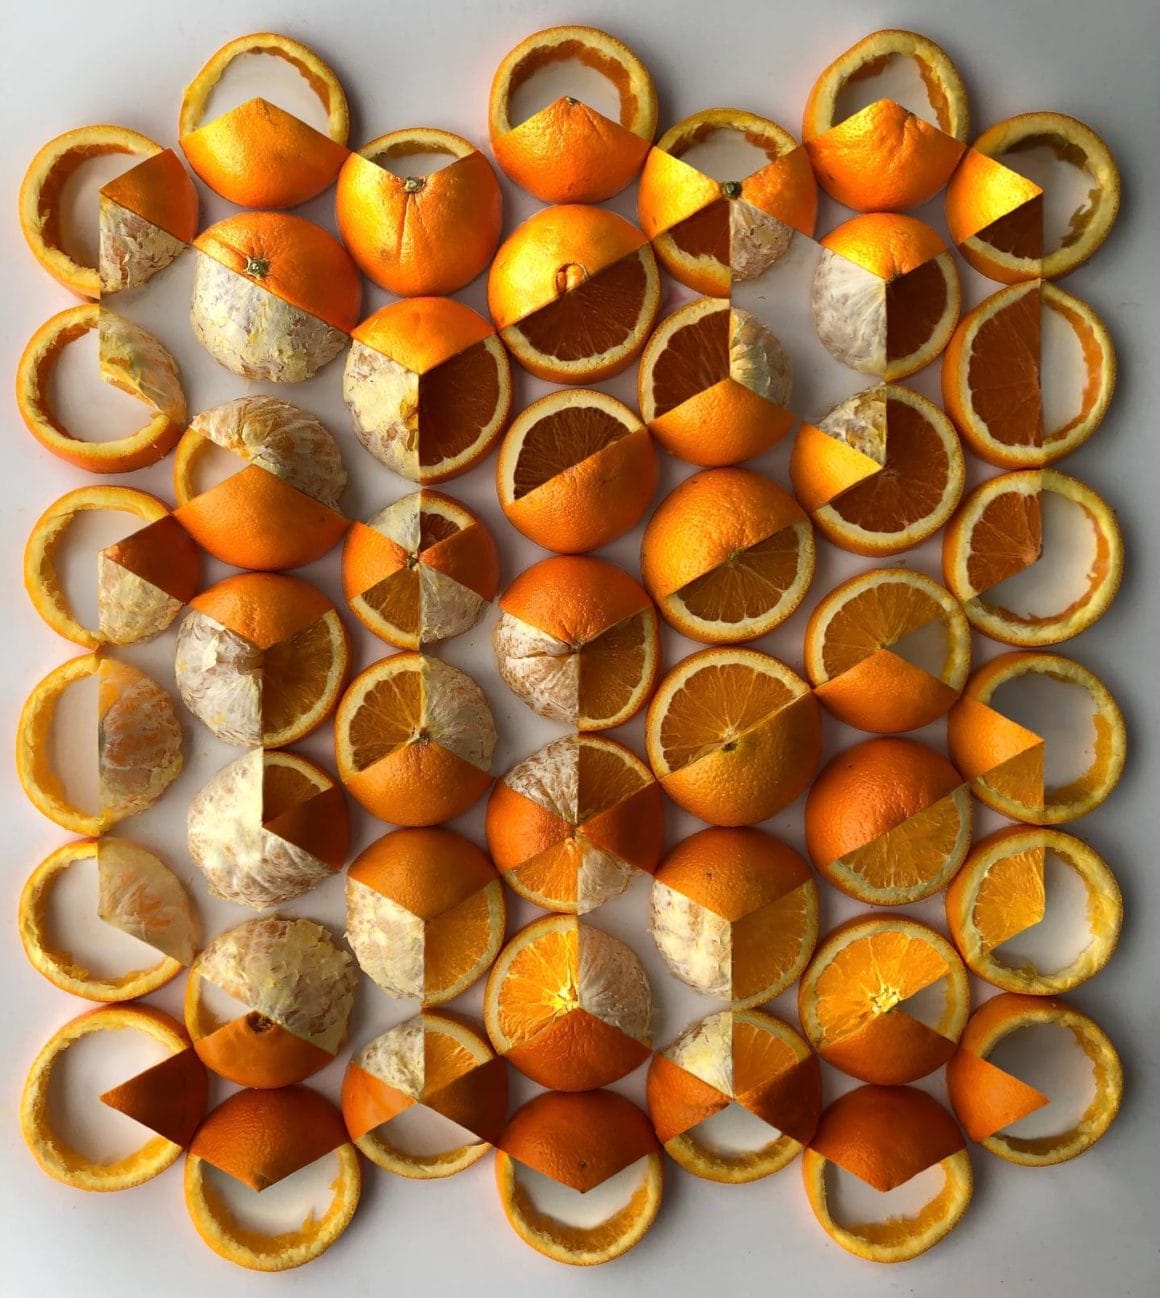 Oeuvre illusioniste formant des formes cubiques réalisée à l'aide d'oranges